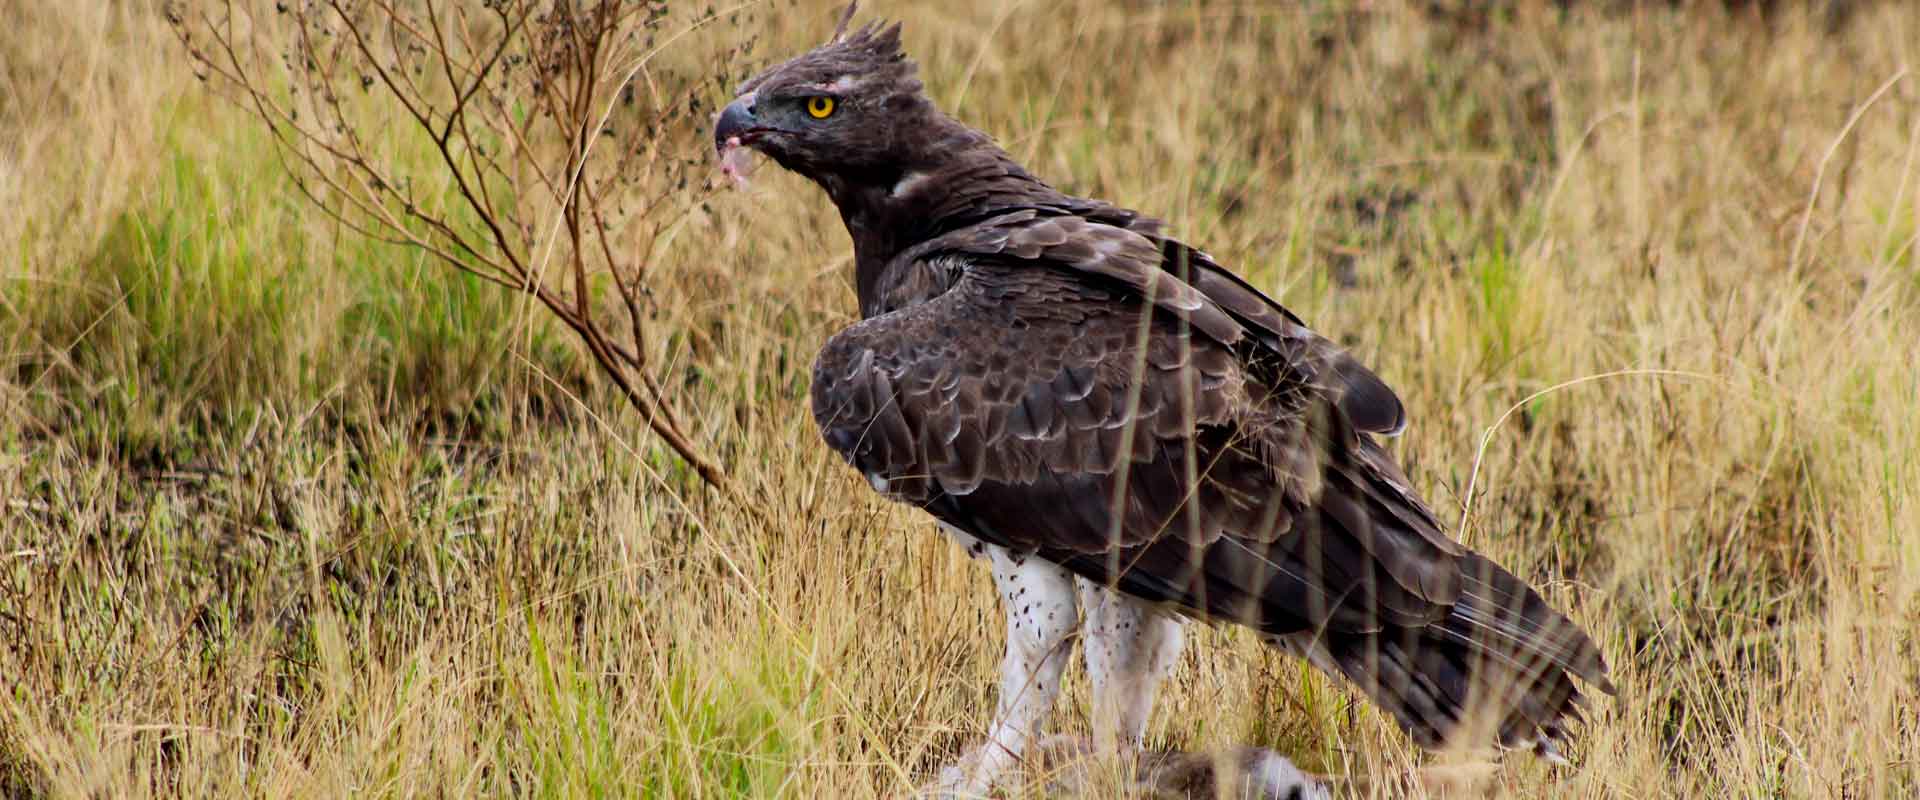 bird-watching-tours-uganda